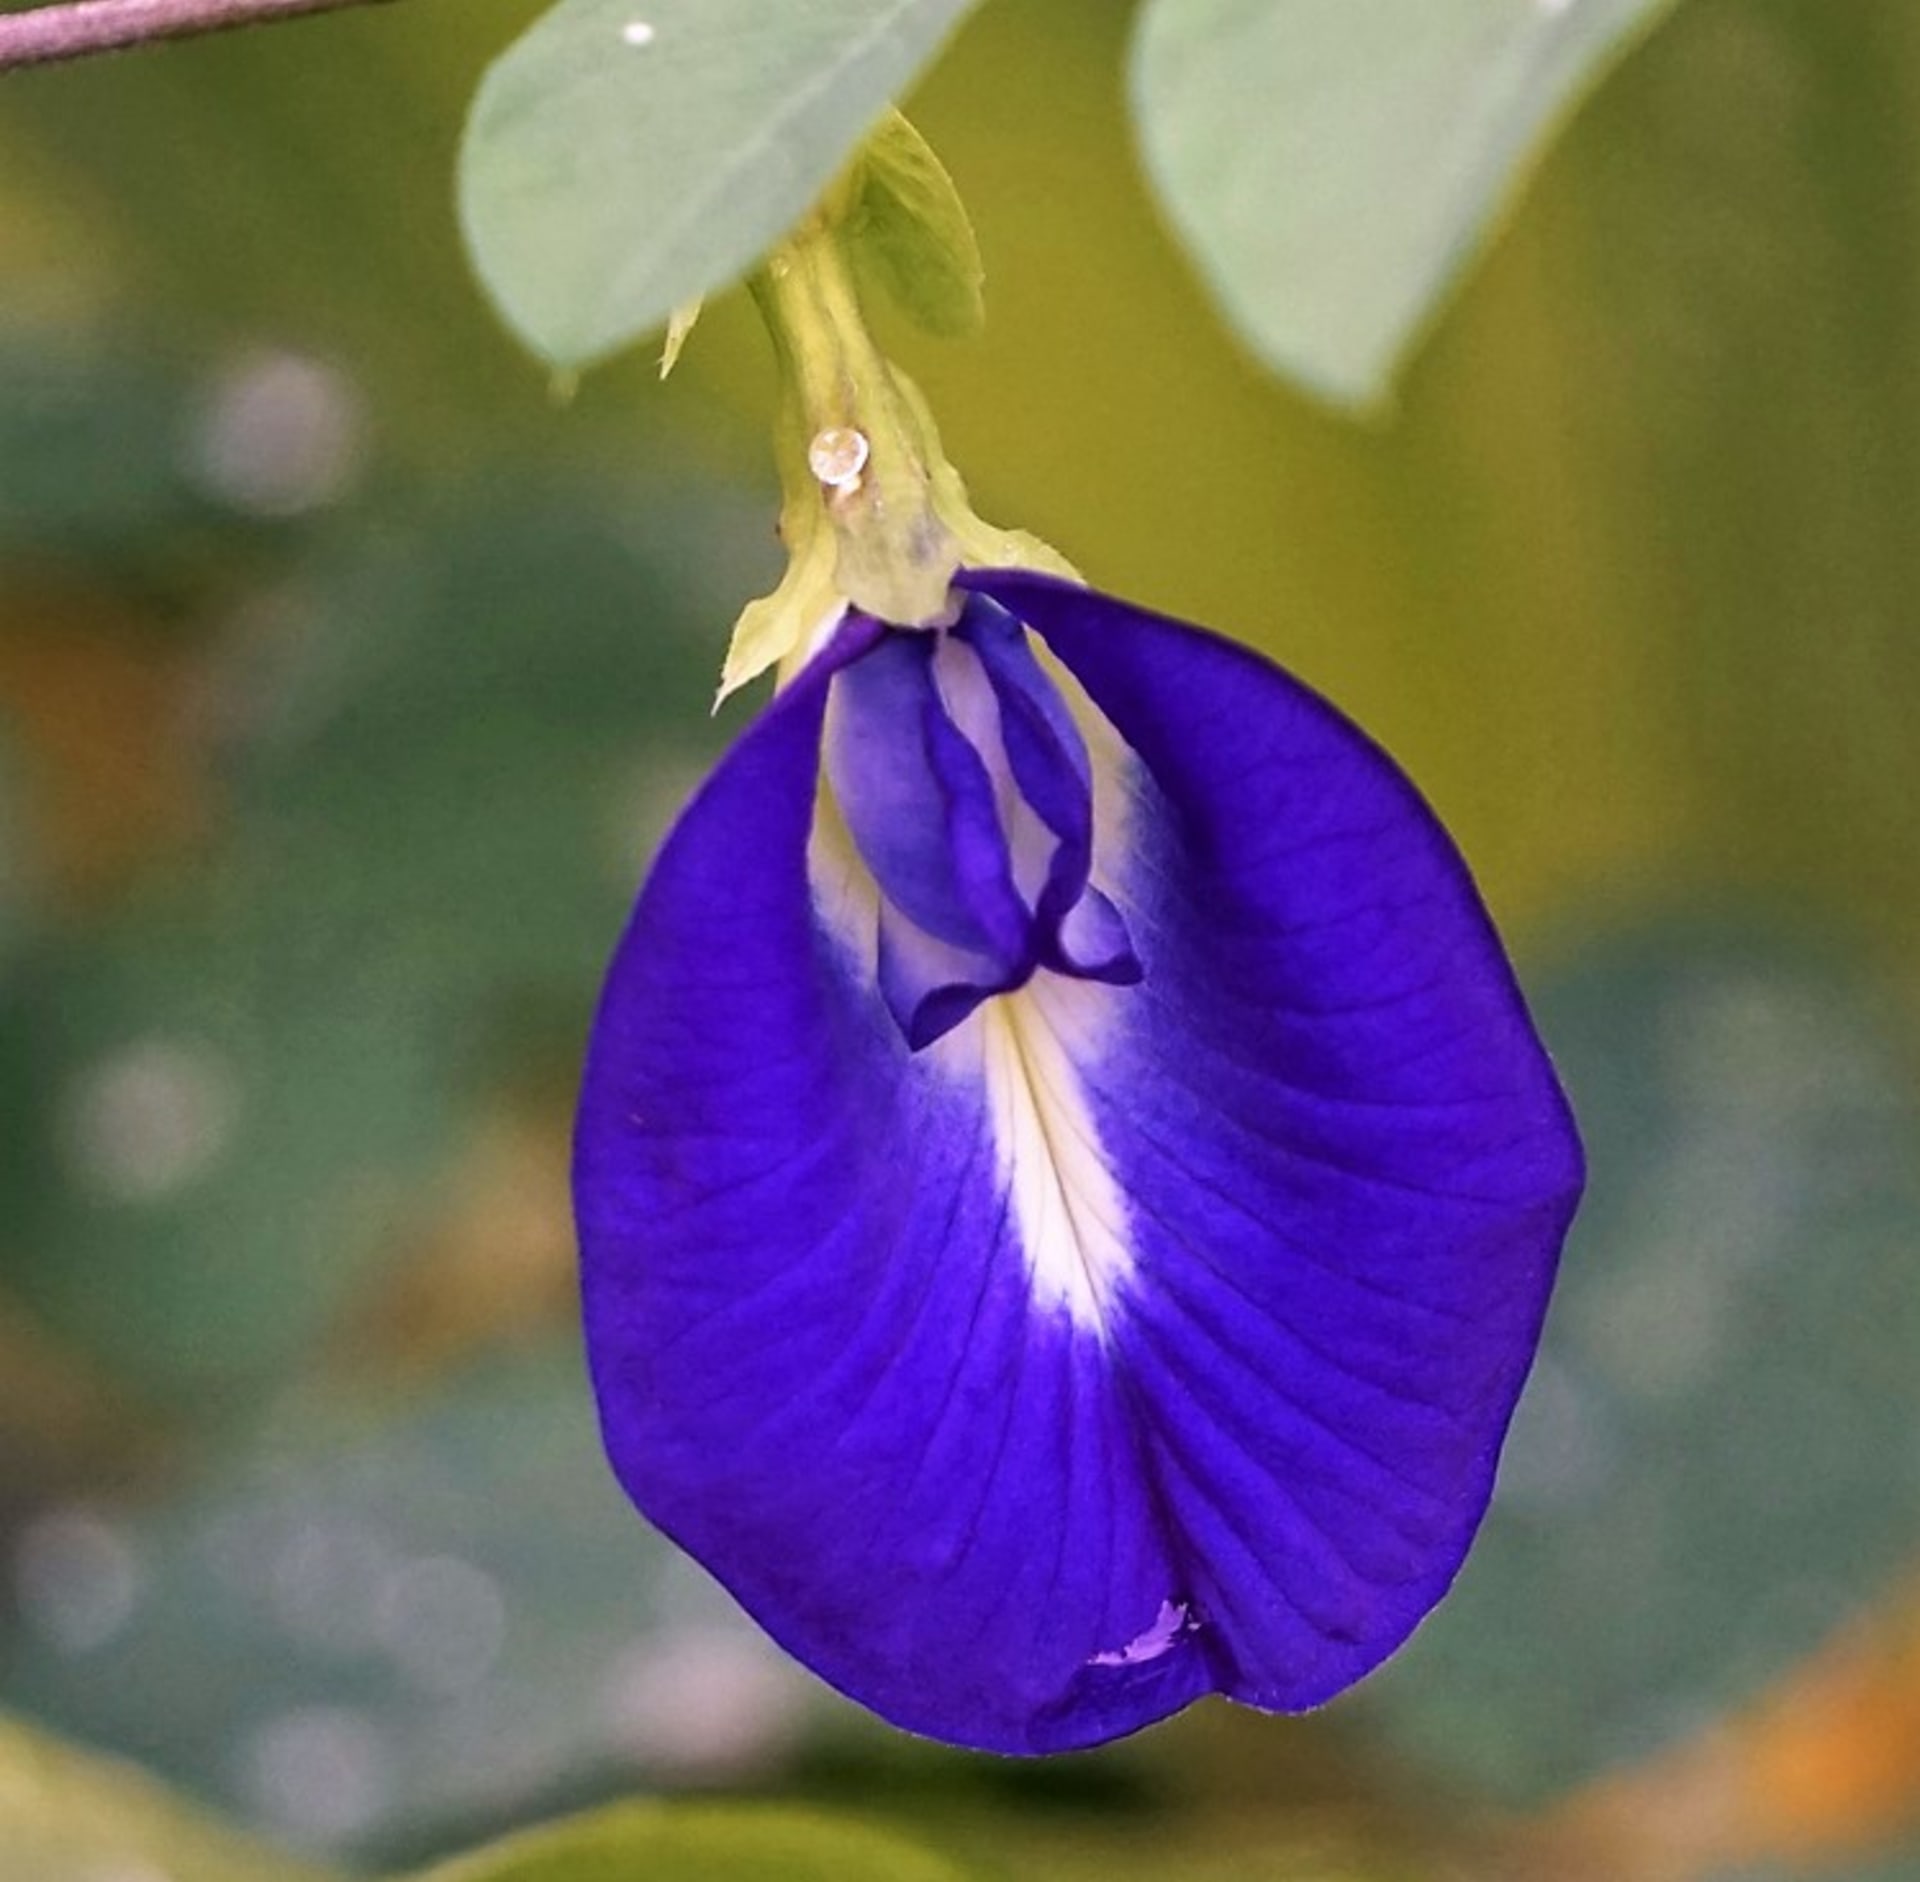 Klitorie má až 6m liány s eliptickými listy a sytě modrofialovými květy (existují i bílé, světle fialové či žluté) velkými asi 3 cm, které nápadně připomínají ženské přirození. 